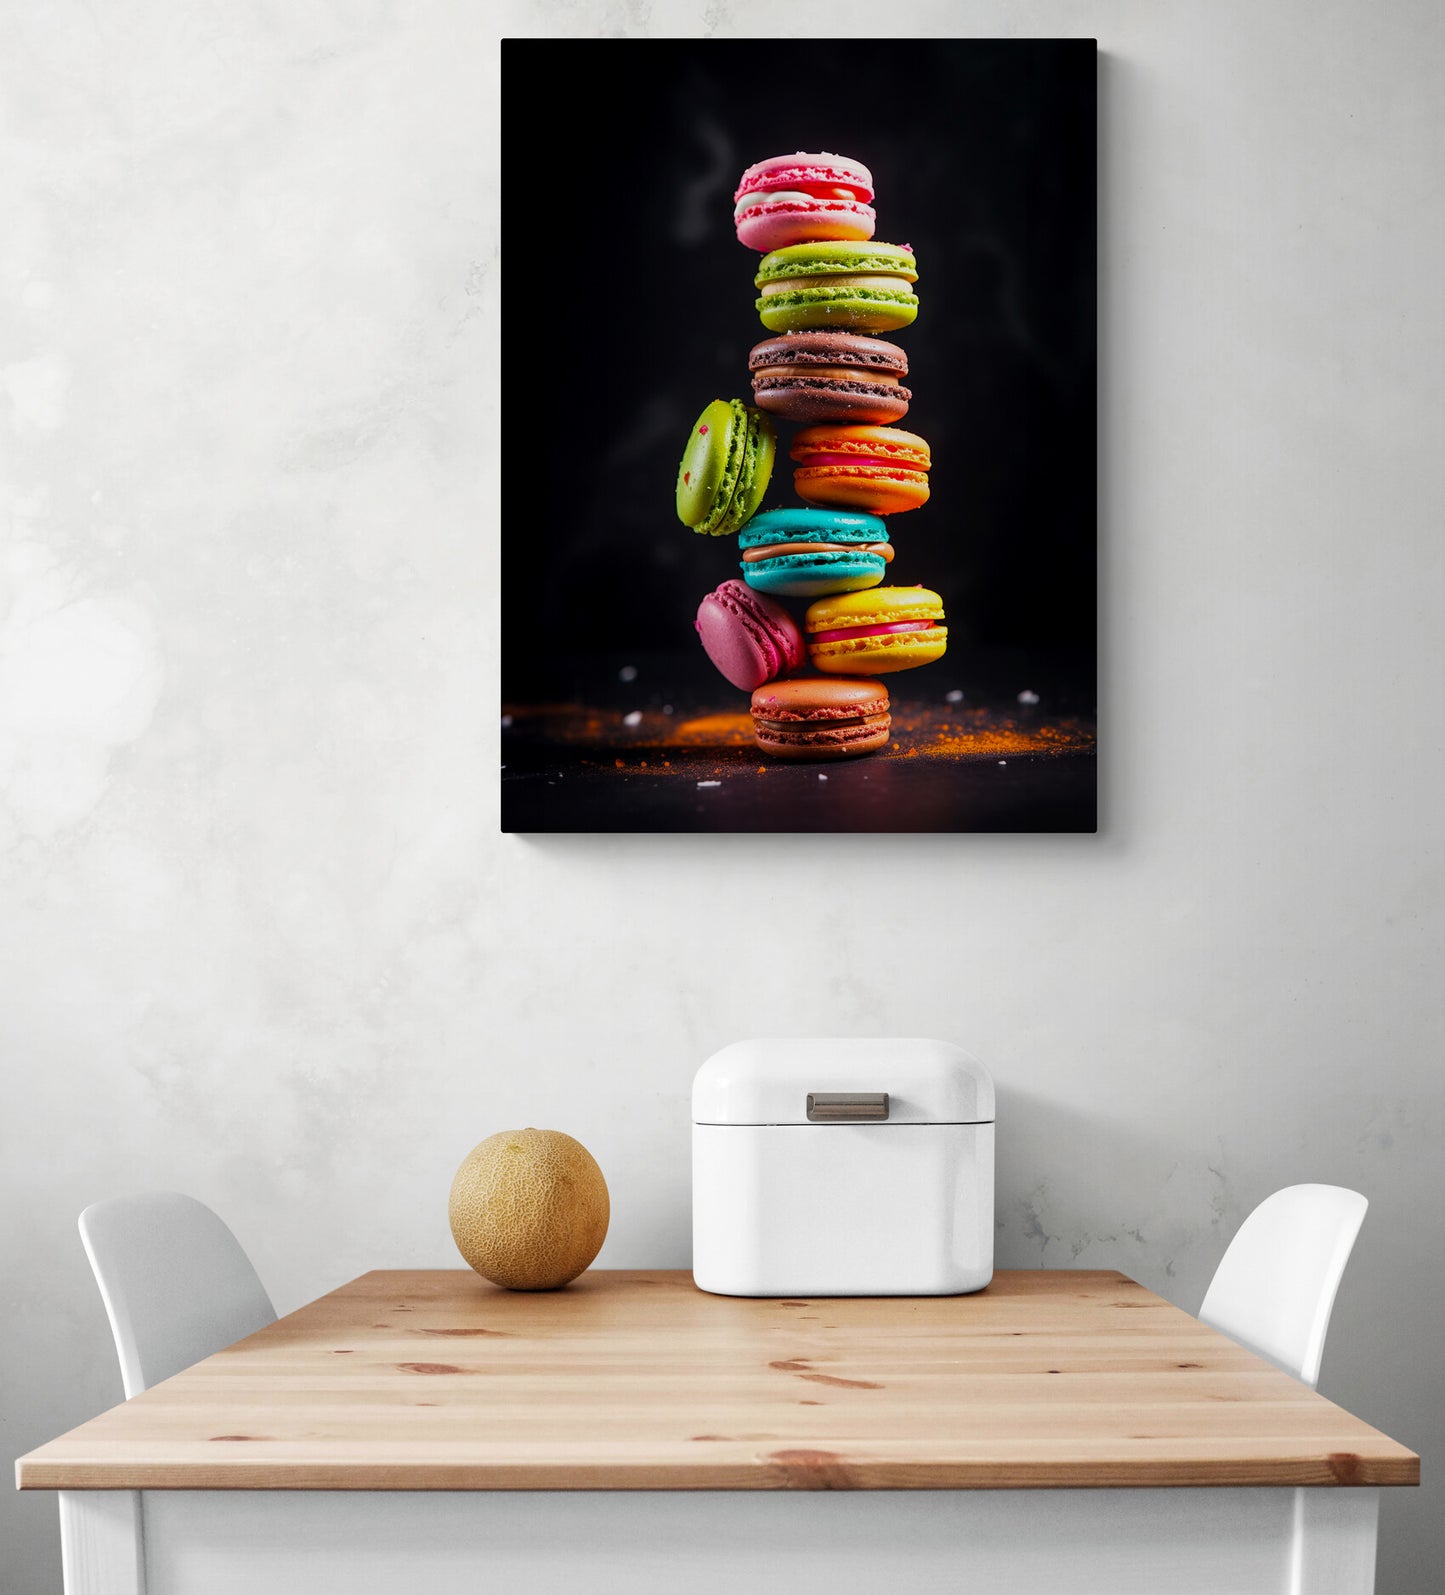 tableau décoration cuisine avec des macarons trés coloré accroché au dessus d'une table de cuisine